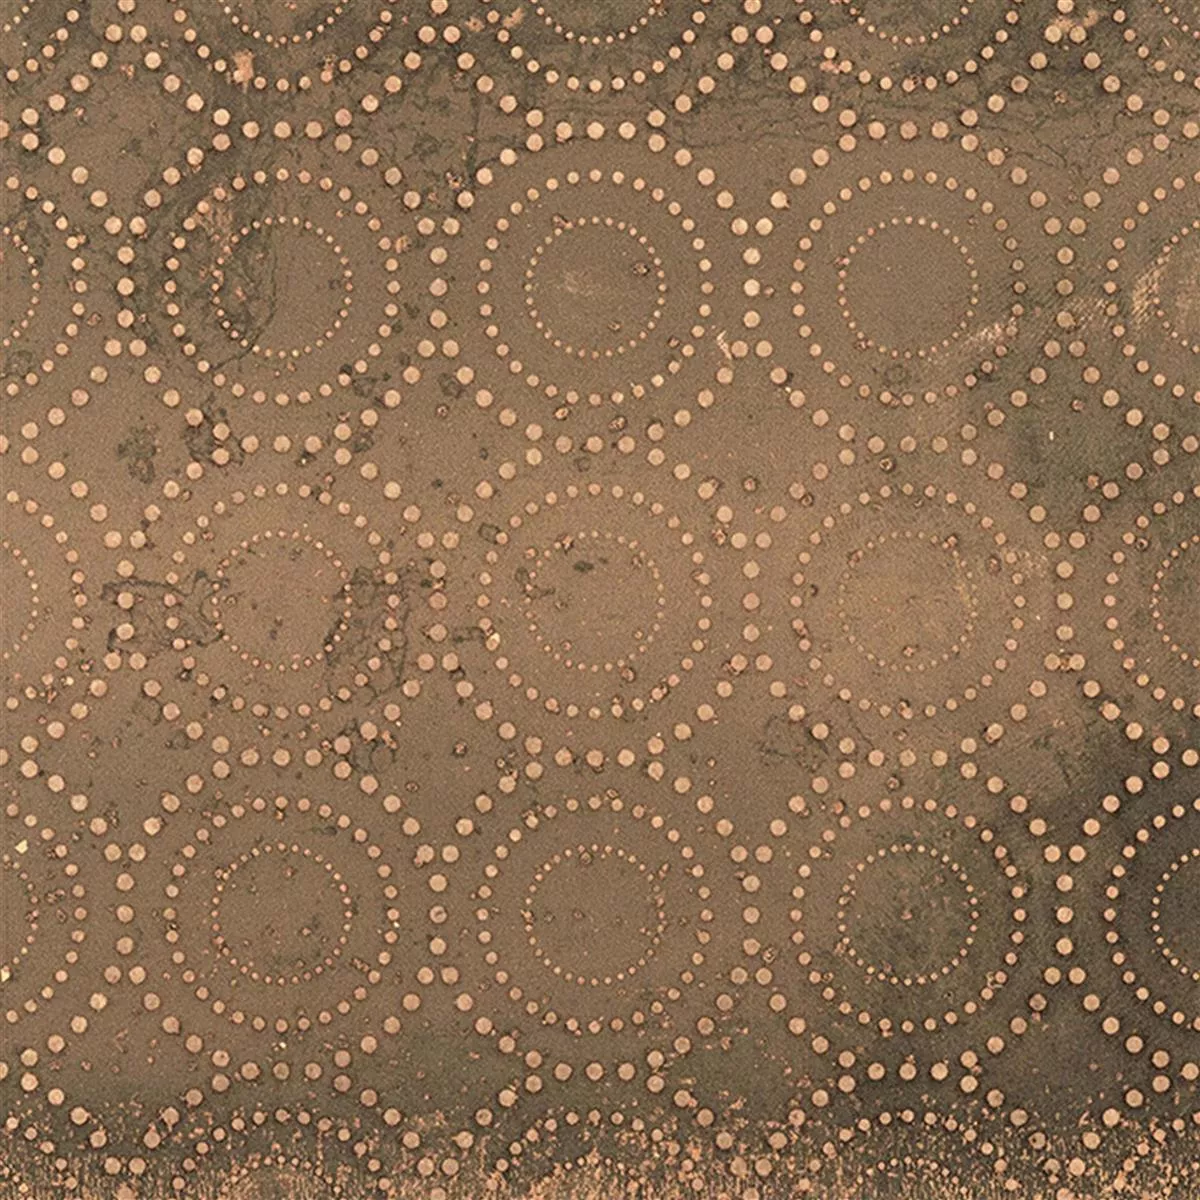 Πλακάκια Δαπέδου Chicago Μεταλλική Εμφάνιση Μπρούντζος R9 - 18,5x18,5cm - 4